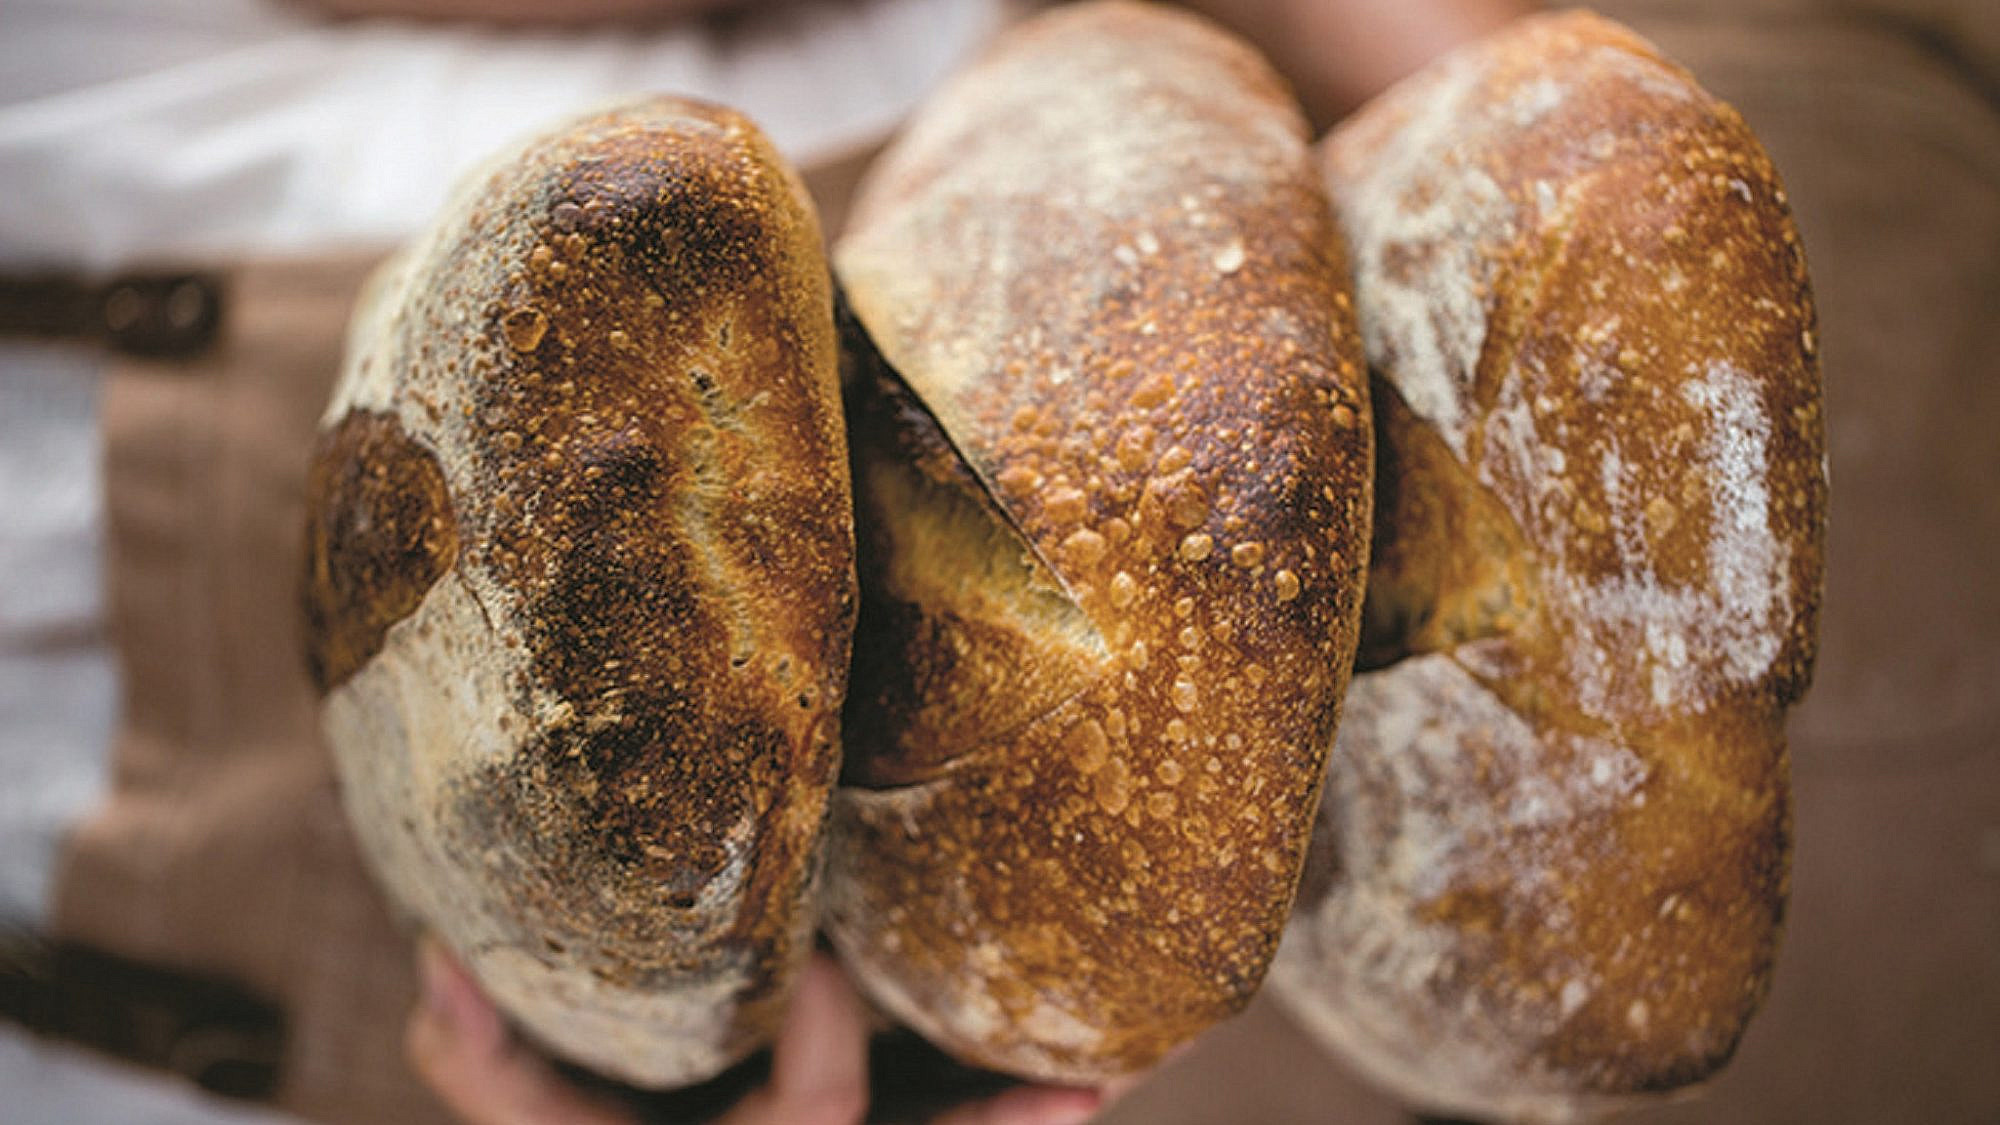 אלחנן תרבות לחם. צילום: תמי סגל